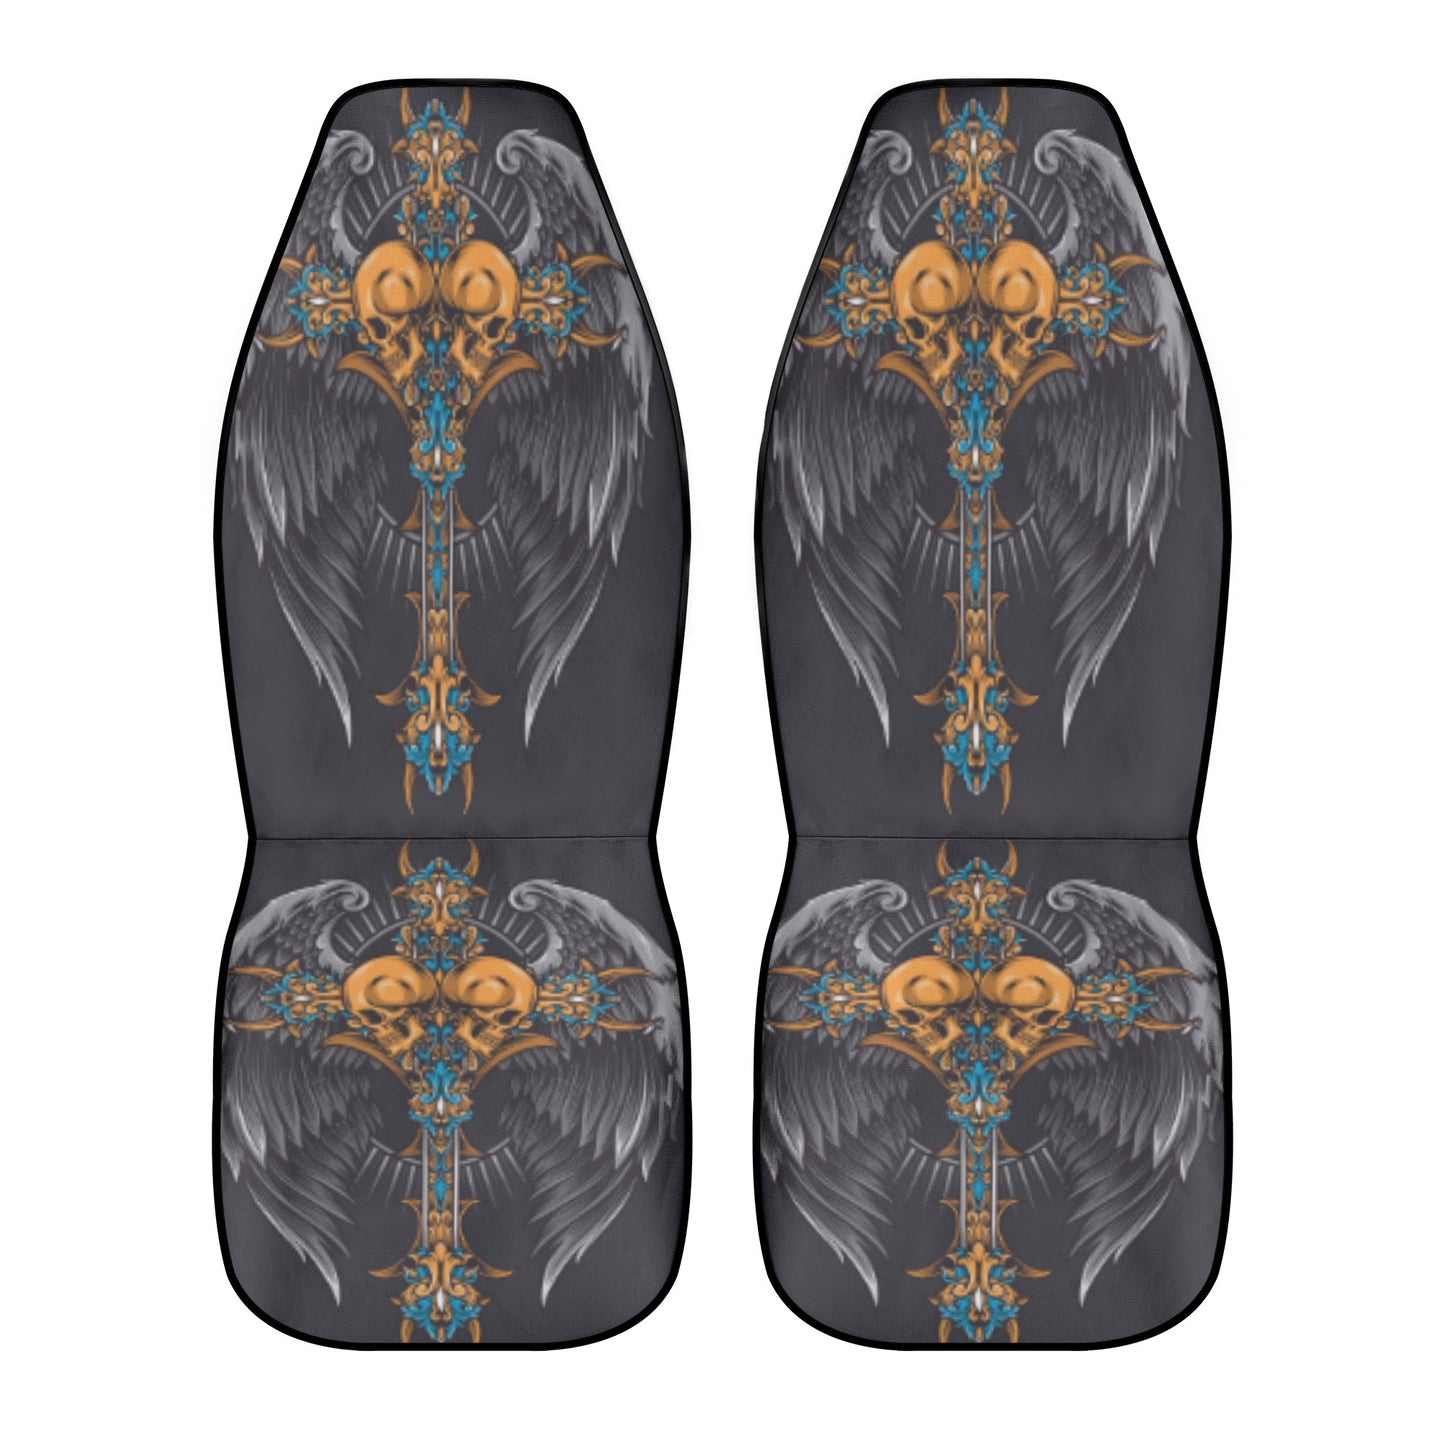 Sword skull wings Car Seat Covers (2 Pcs)